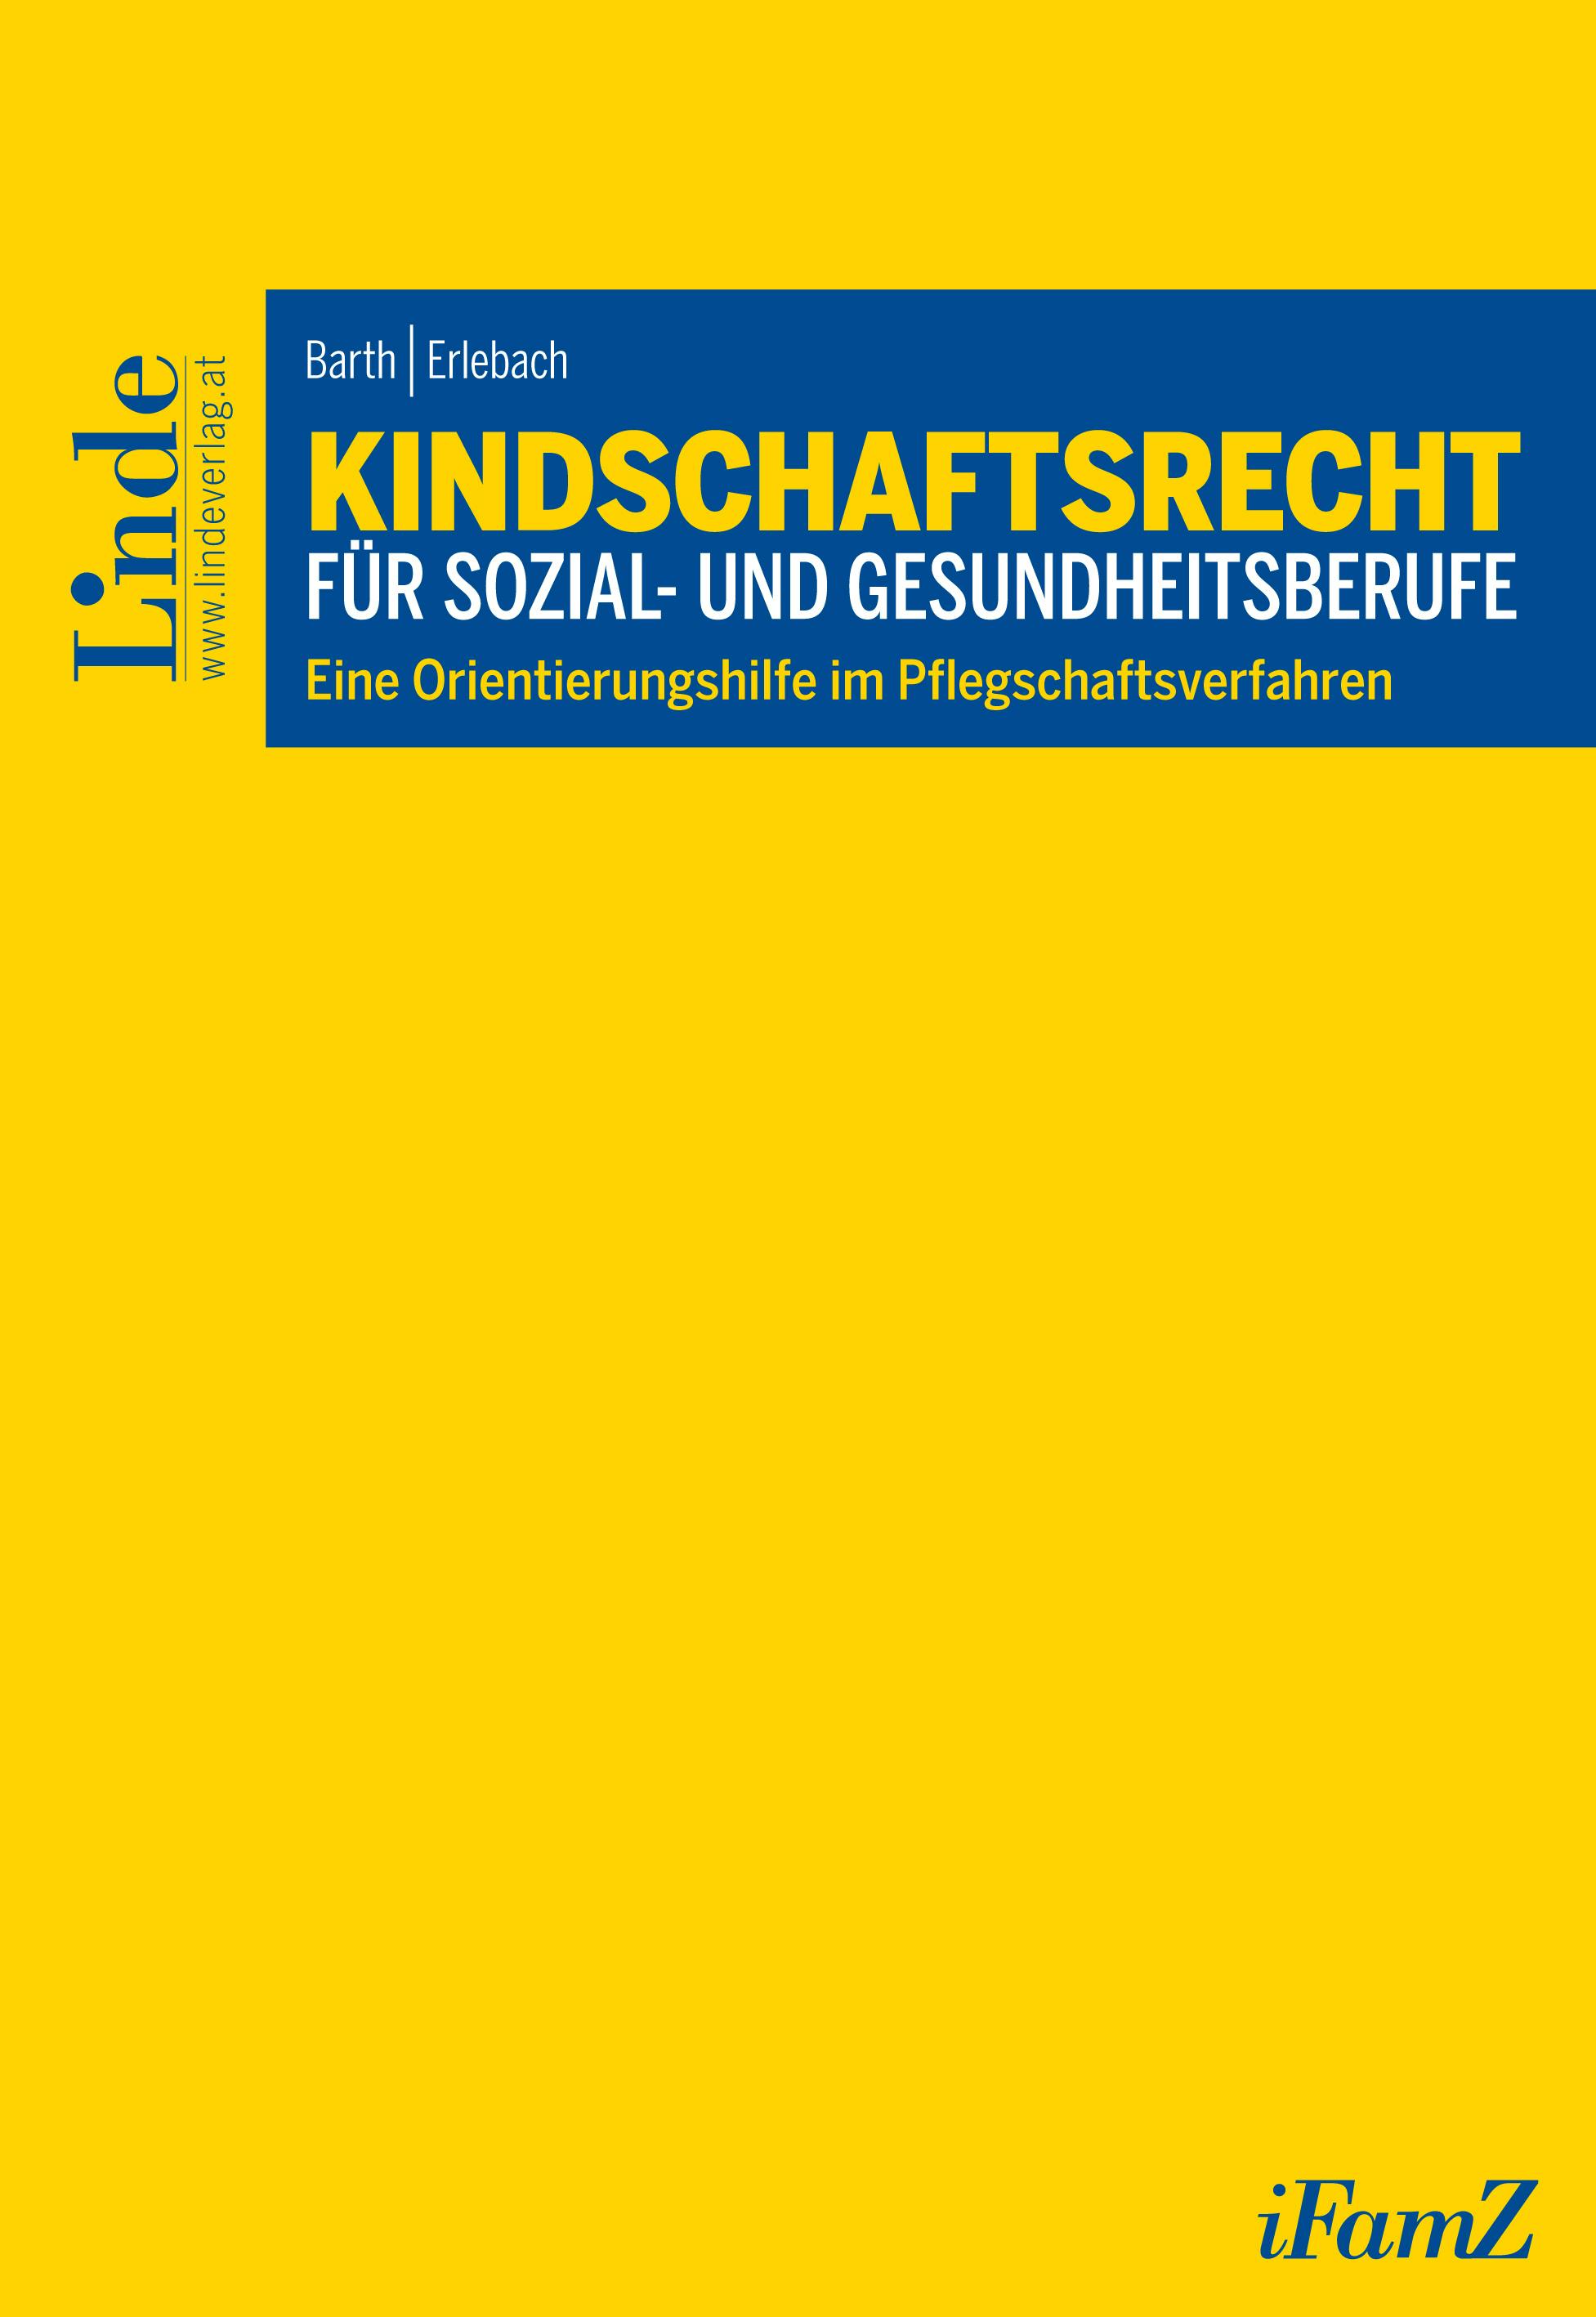 Barth | Erlebach
Kindschaftsrecht für Sozial- und Gesundheitsberufe
Eine Orientierungshilfe im Pflegschaftsverfahren
Schriftenreihe iFamZ